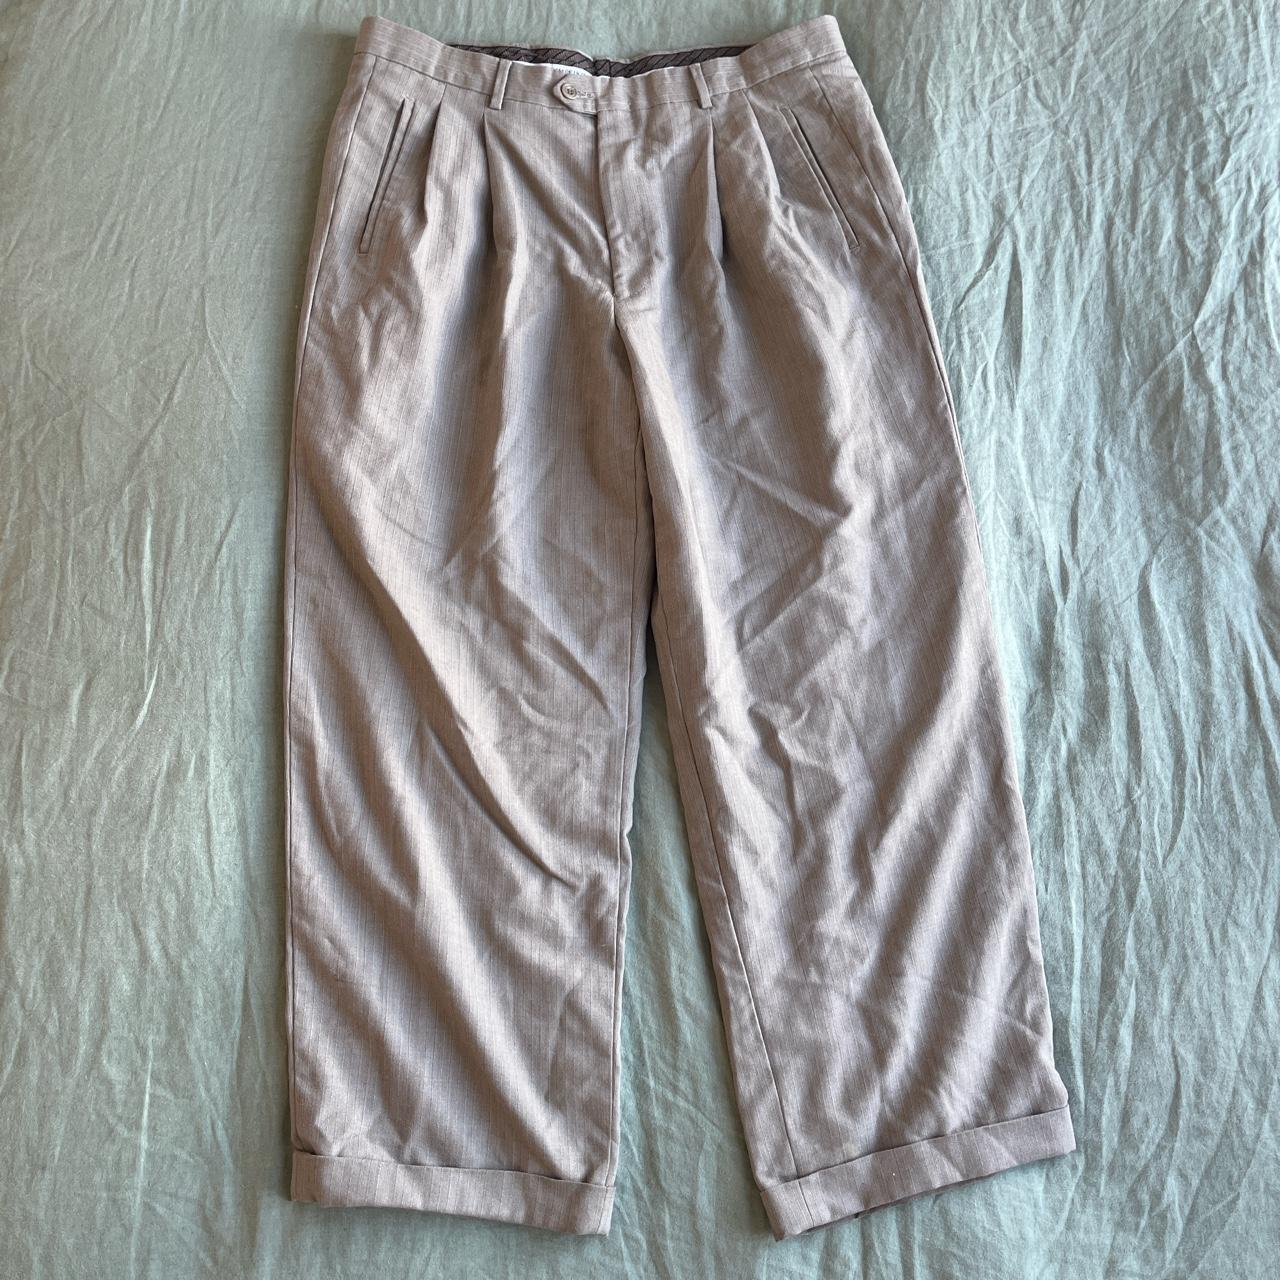 Vintage Italian grey pinstripe trousers 🔀 Baggy... - Depop